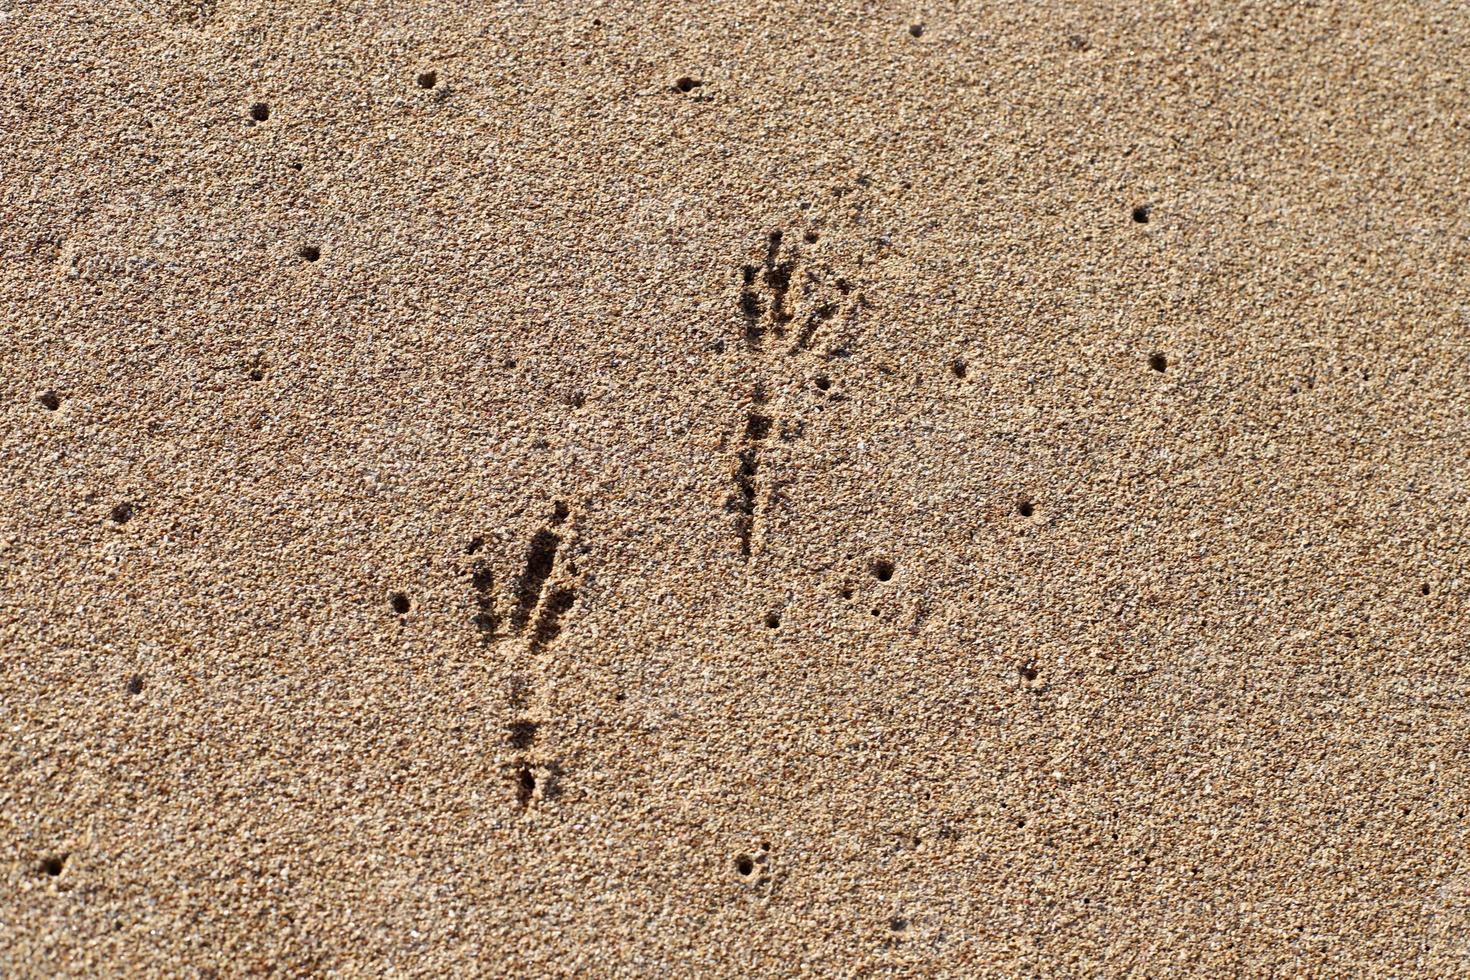 fotspår i sanden vid havet foto